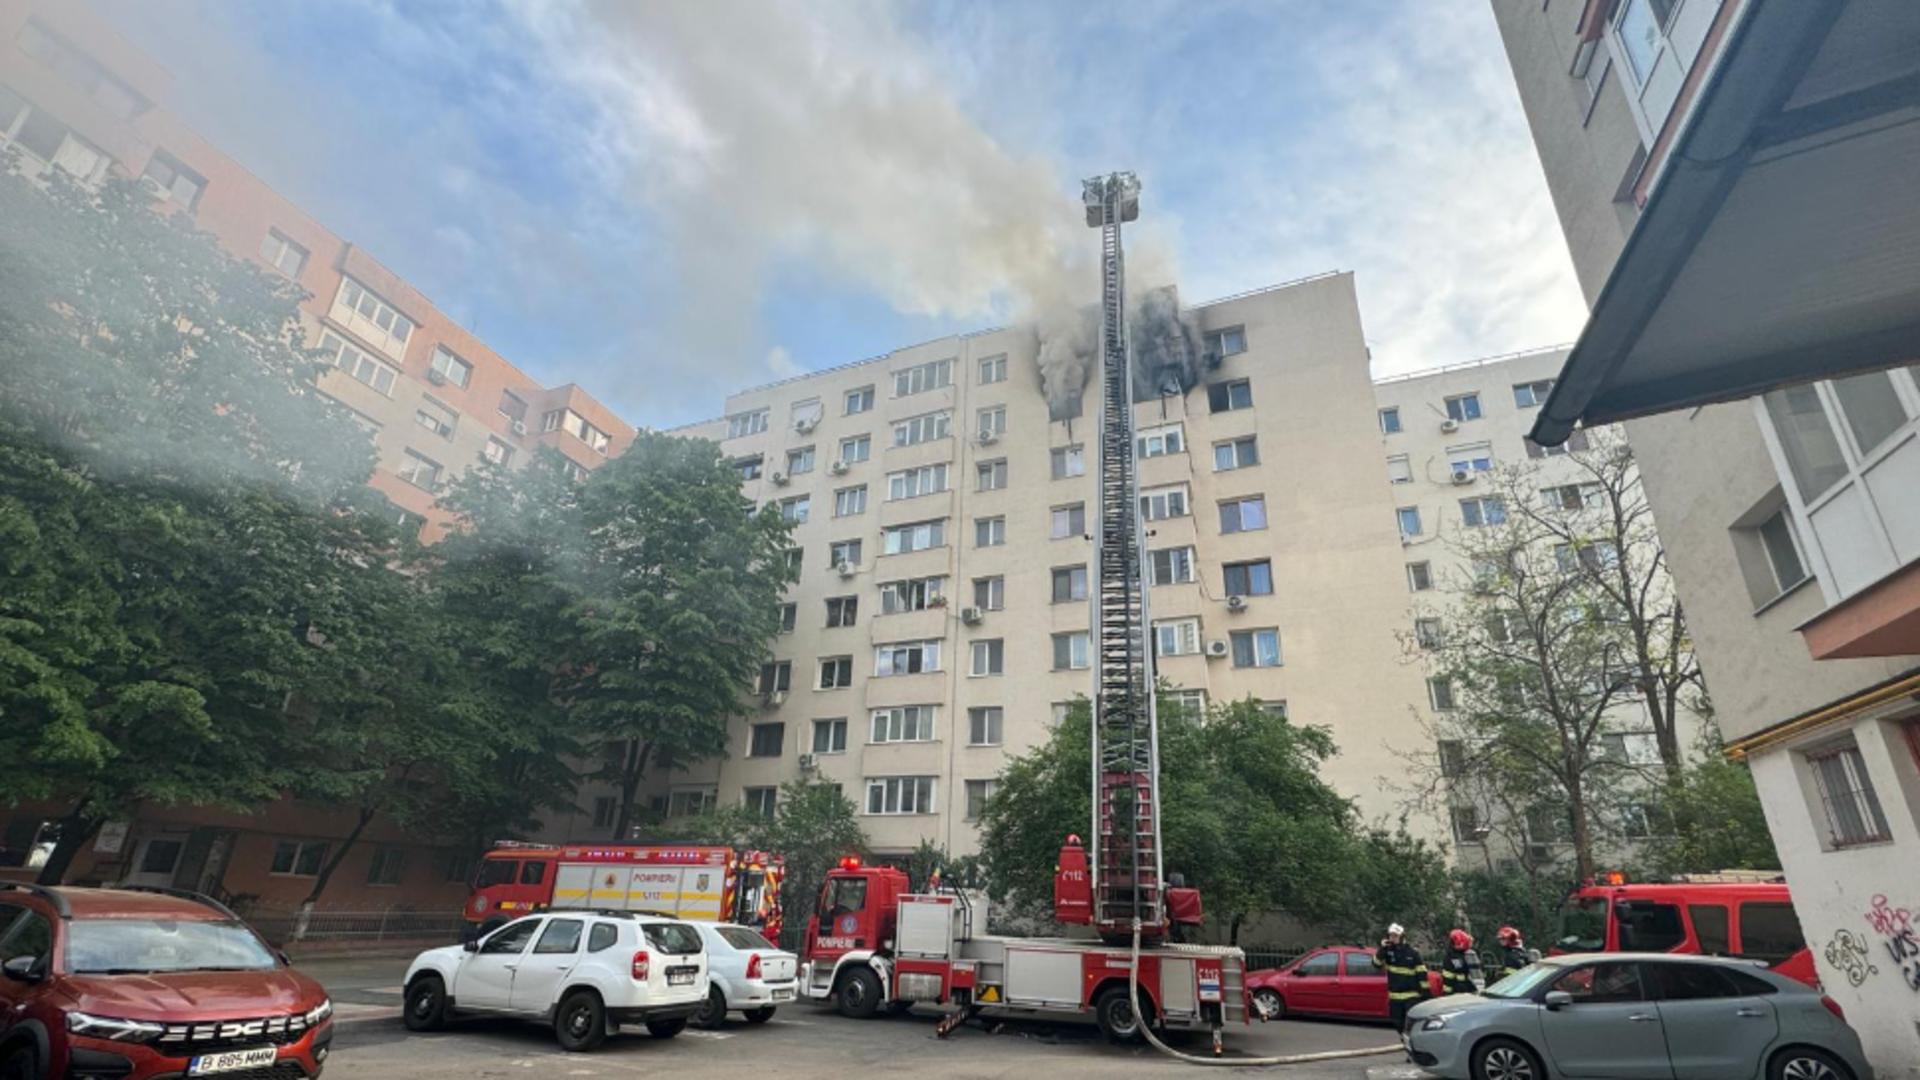 Incendiu puternic la un bloc din Capitală: O persoană a murit